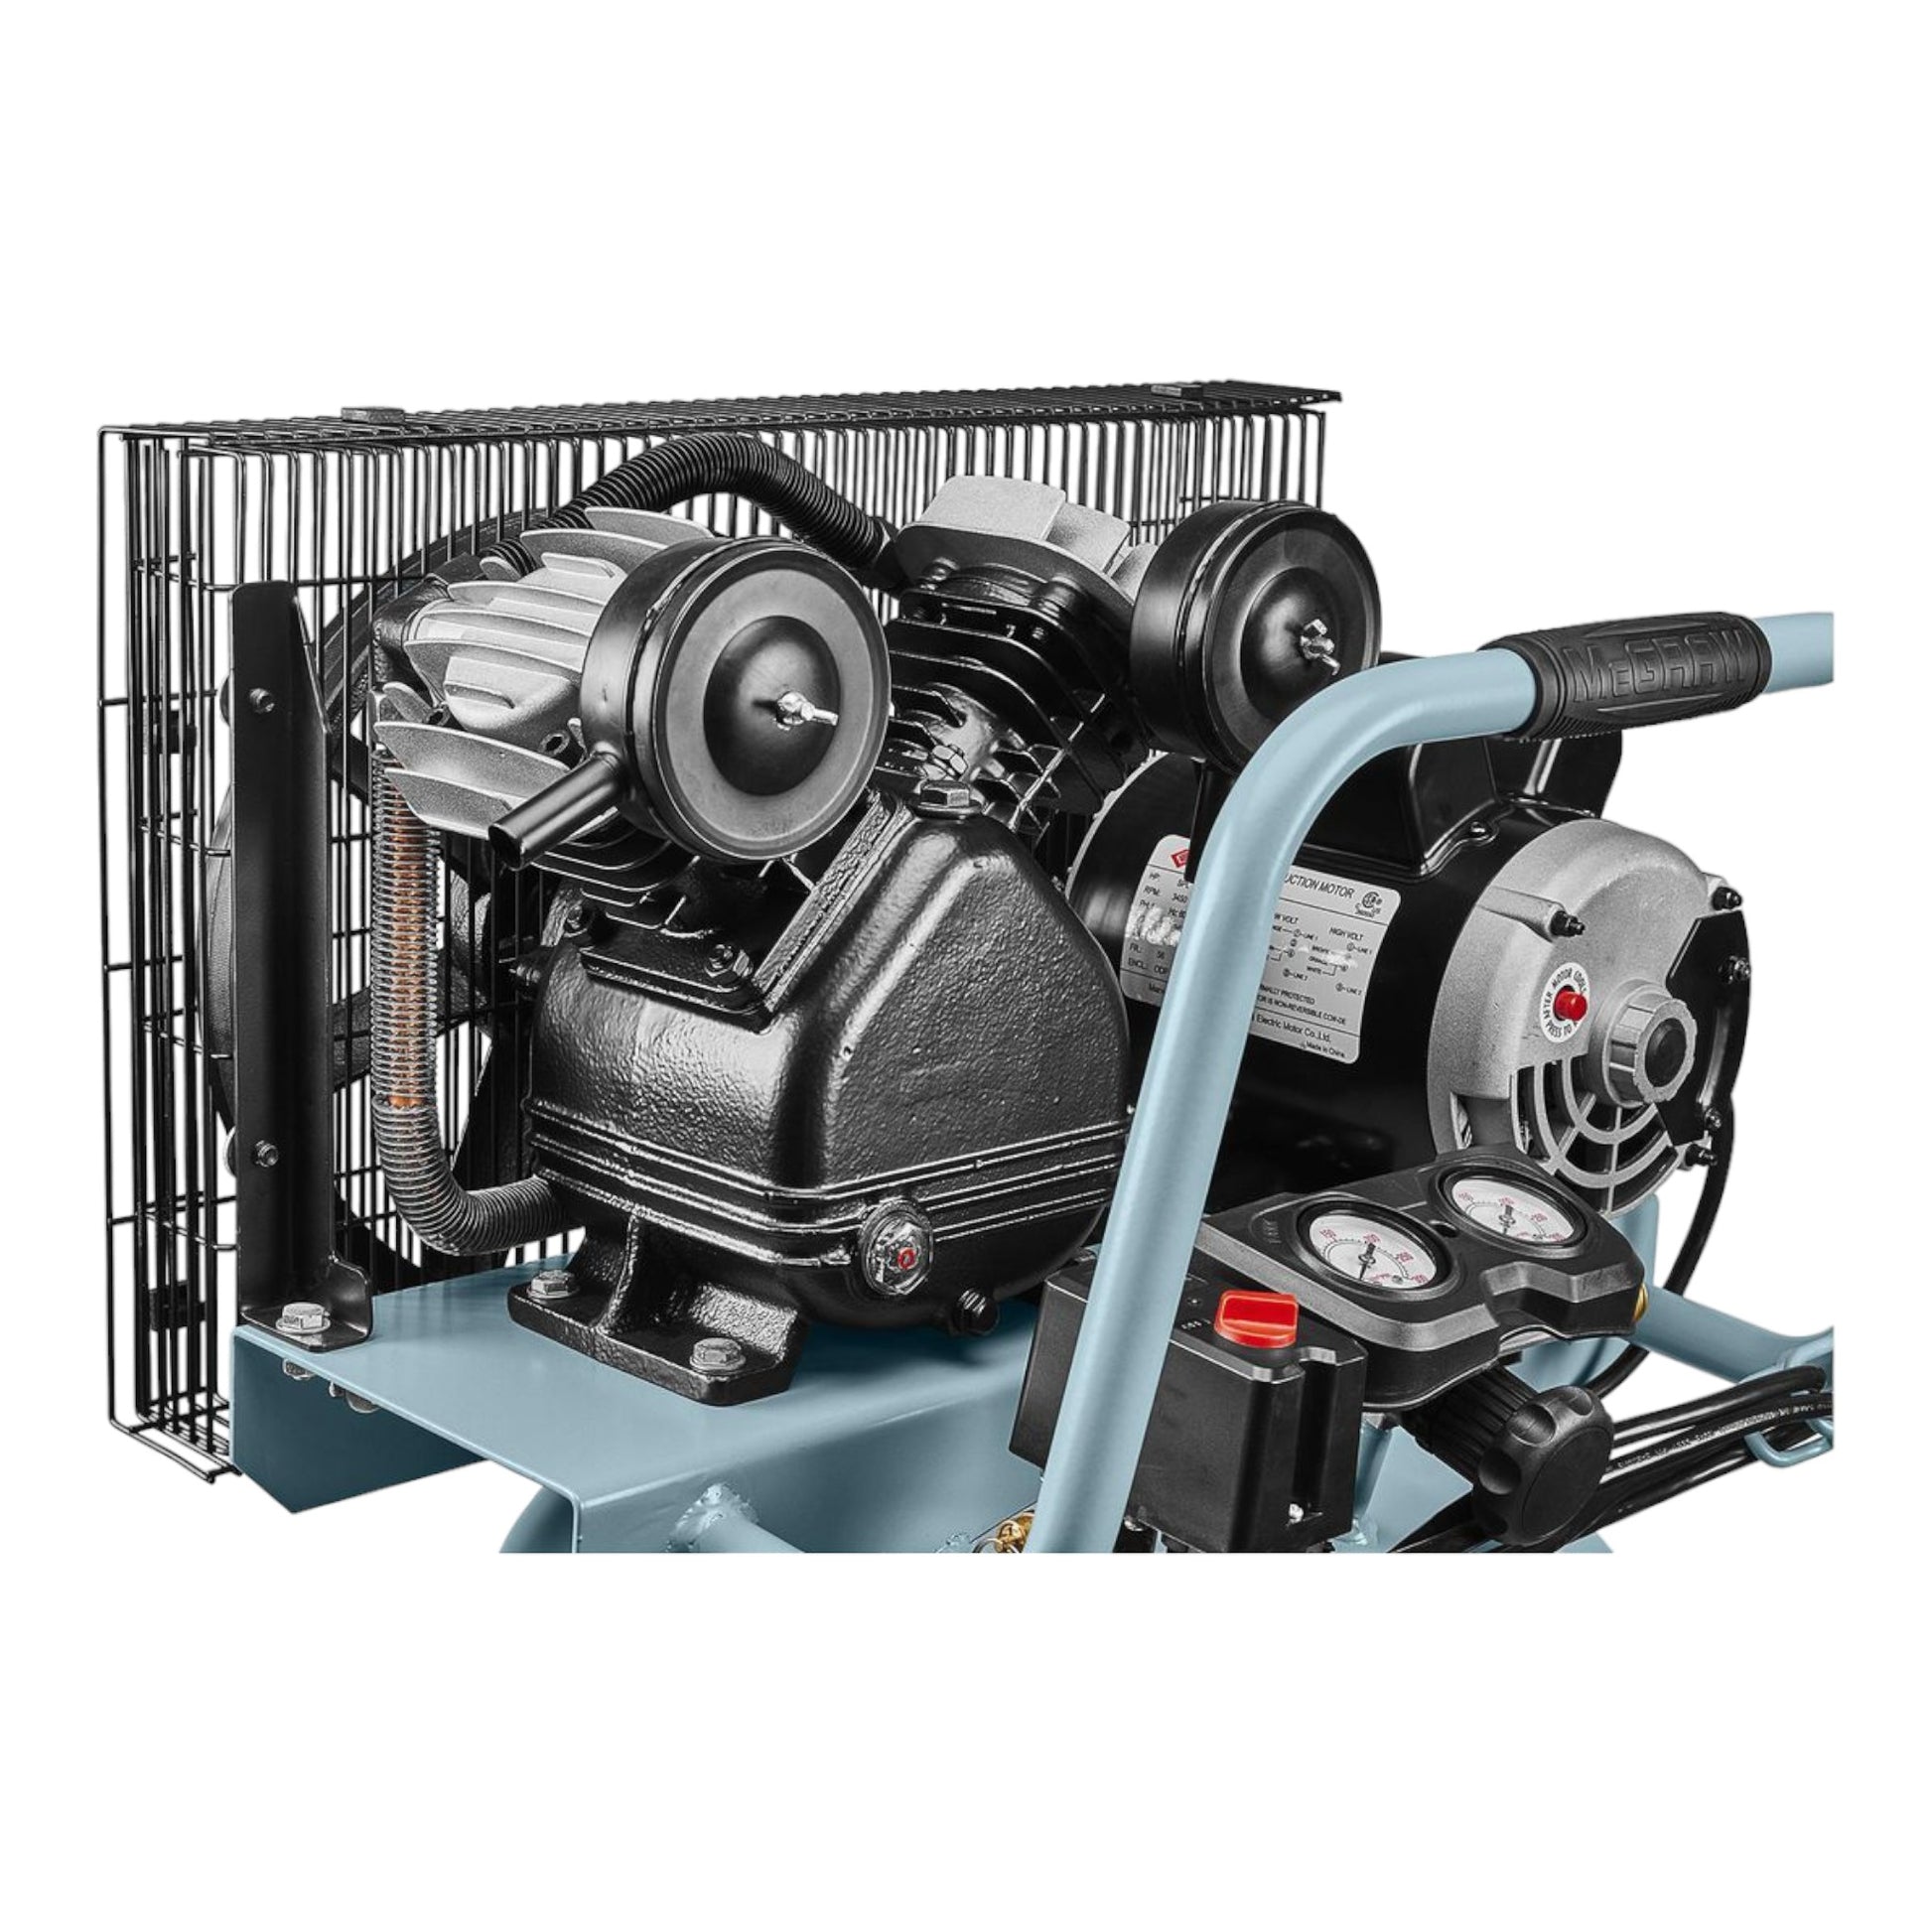 VC29 29 gallon, 1.8 HP, 165 PSI Oil-Lube Vertical Air Compressor